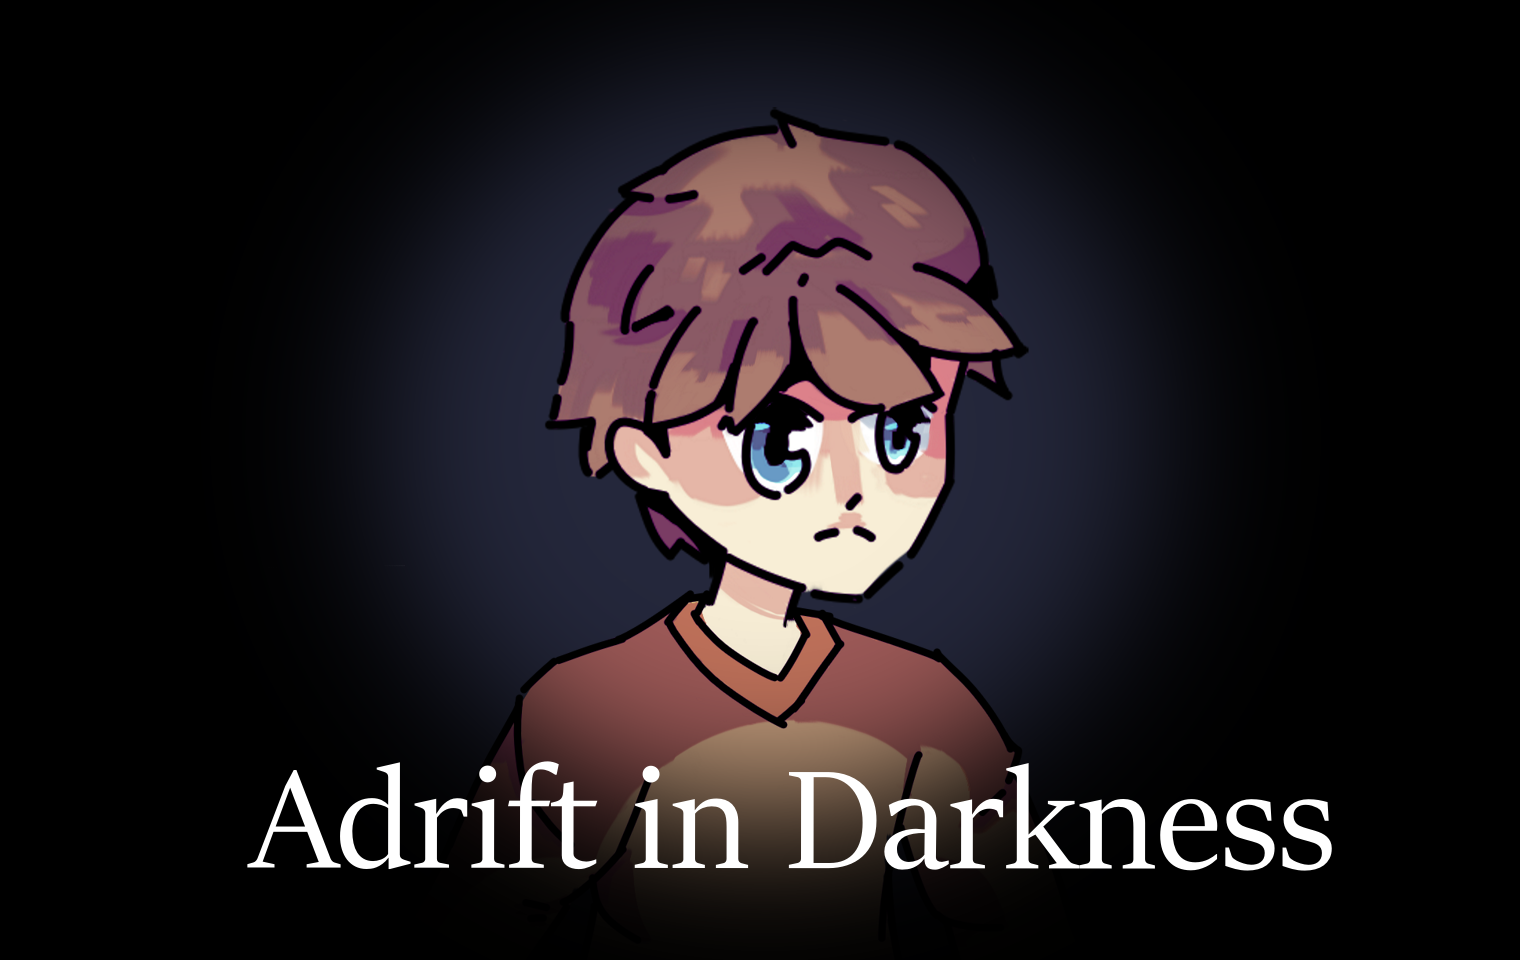 Adrift in Darkness